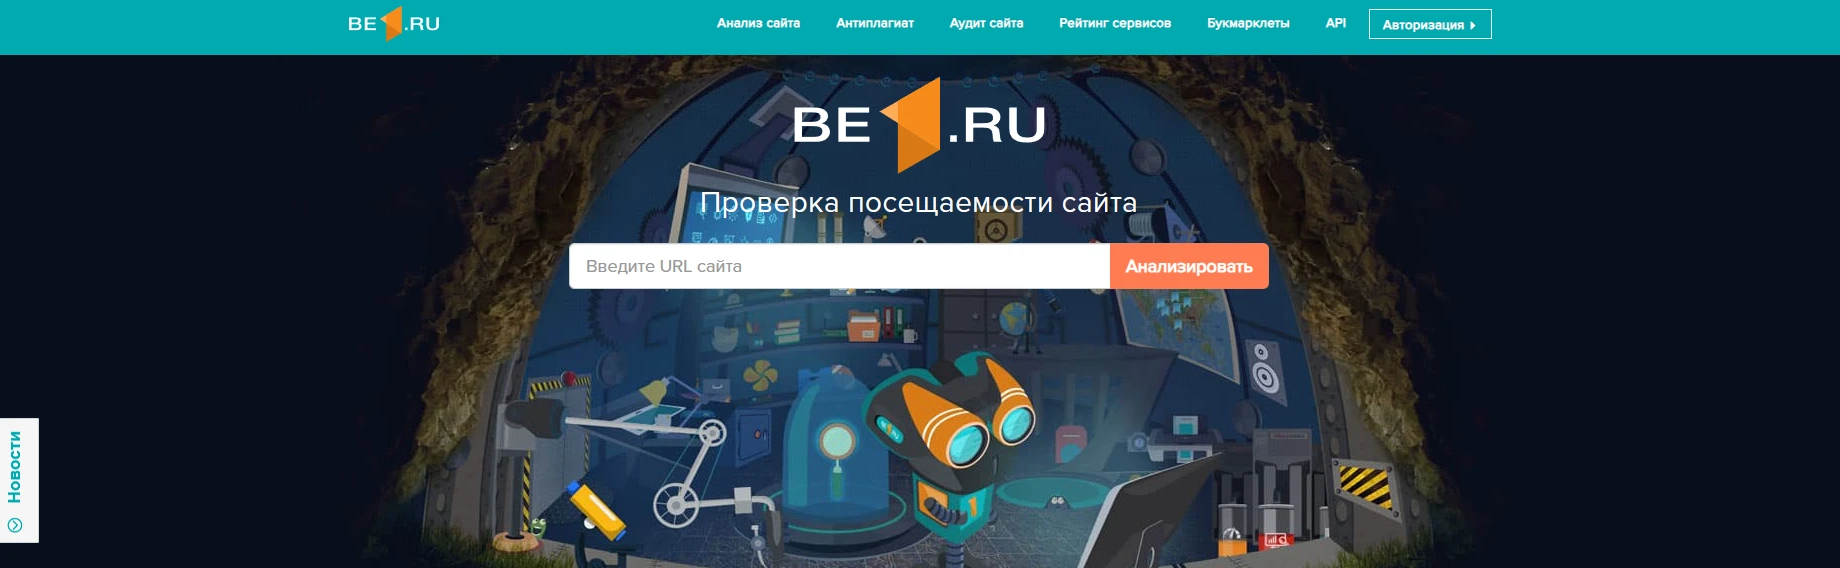 Be1.ru сервис